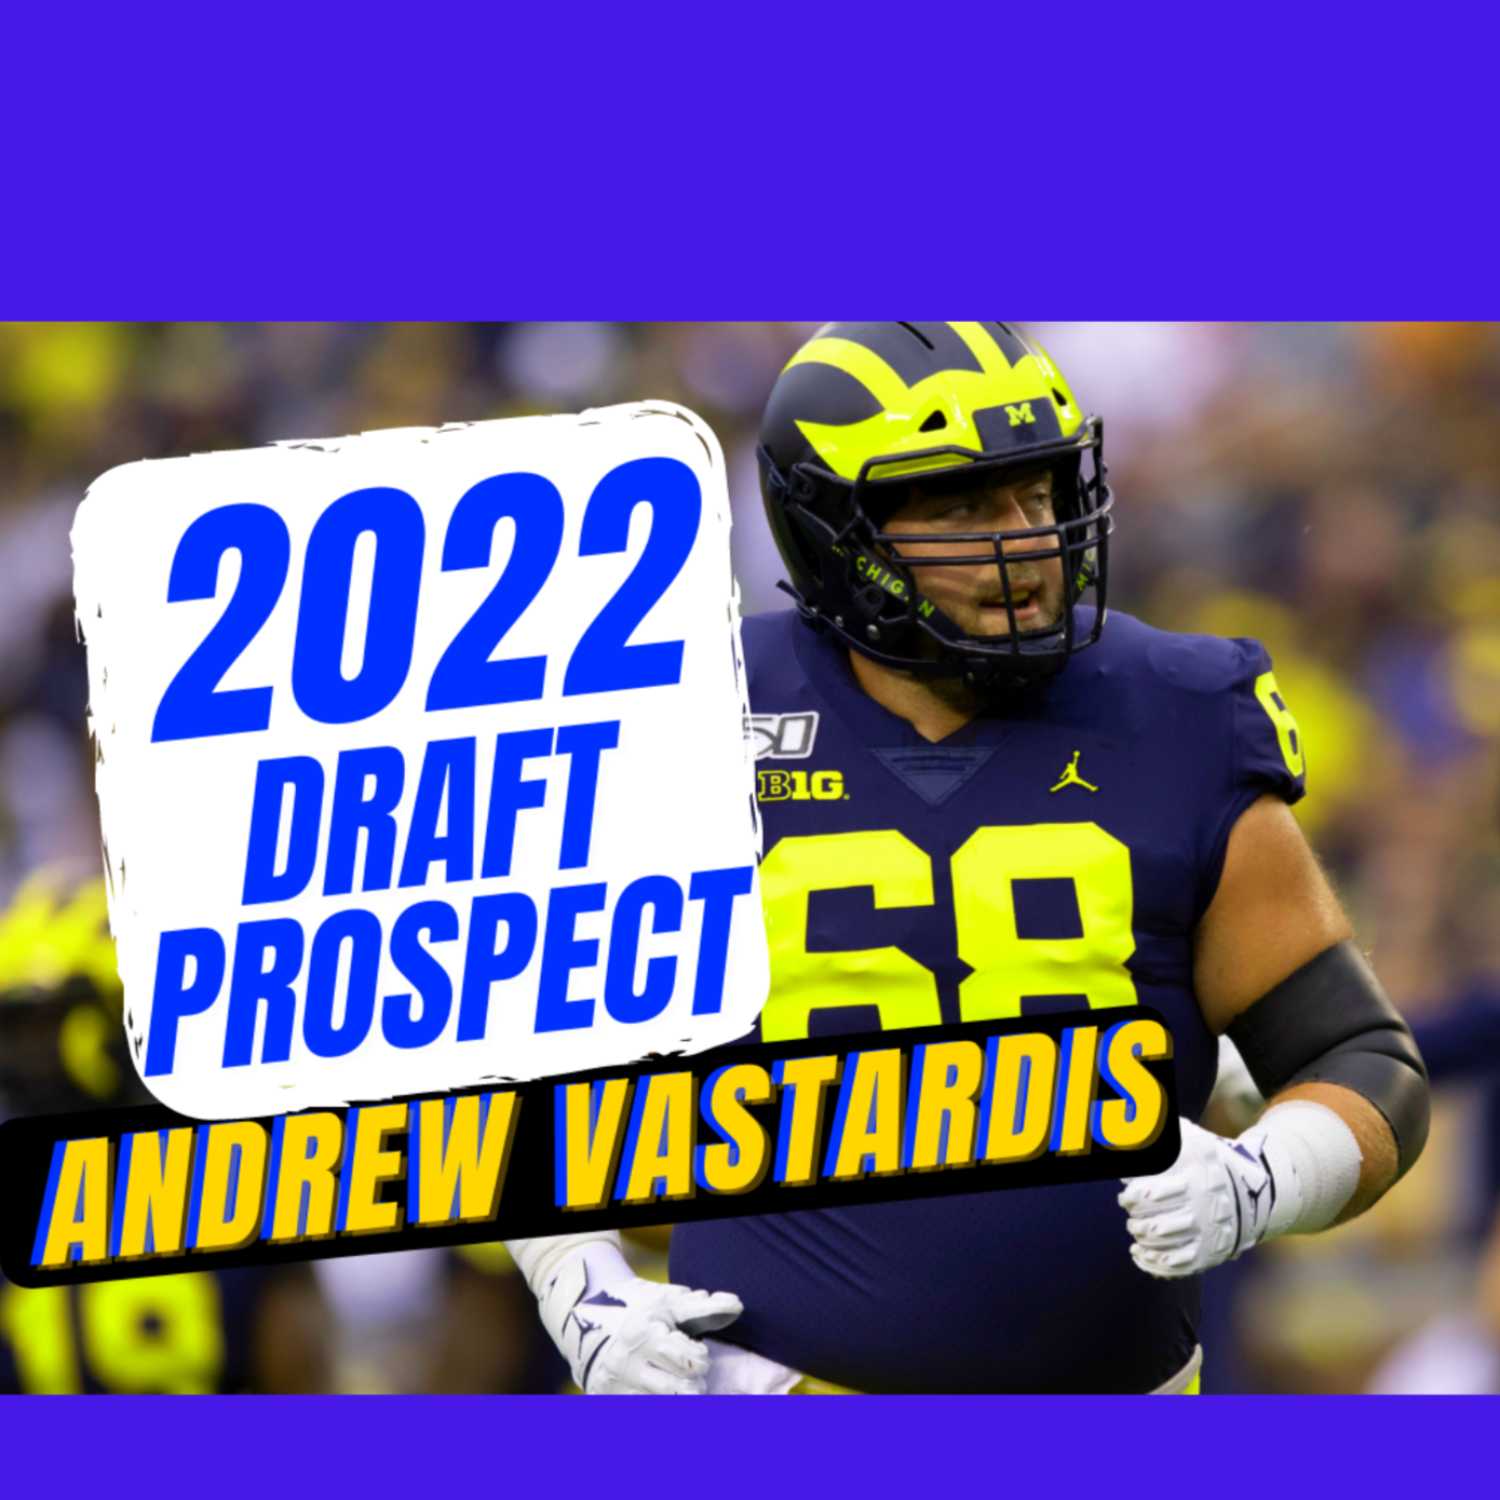 2022 NFL Draft Prospect ANDREW VASTARDIS | LEADER OF MEN!